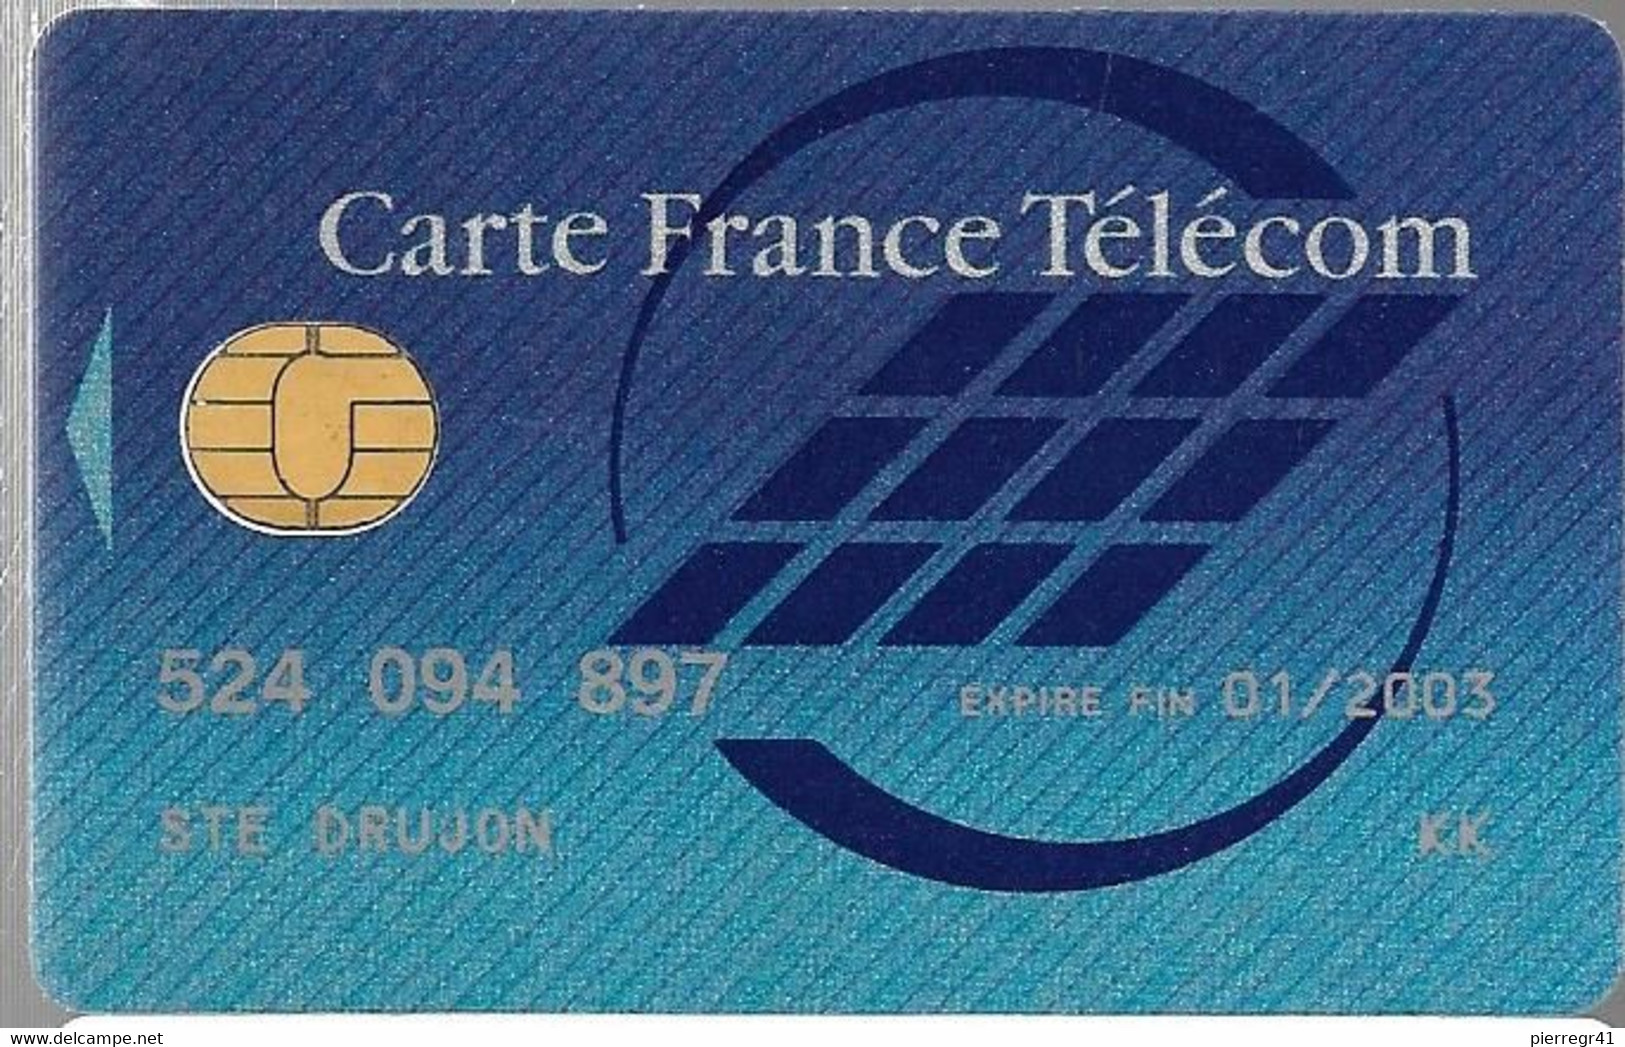 1-CARTE FRANCE TELECOM-PUCE SOL C-NATIONALE-Exp01/2003-TBE -  Kaarten Van De Busdienst Pastel